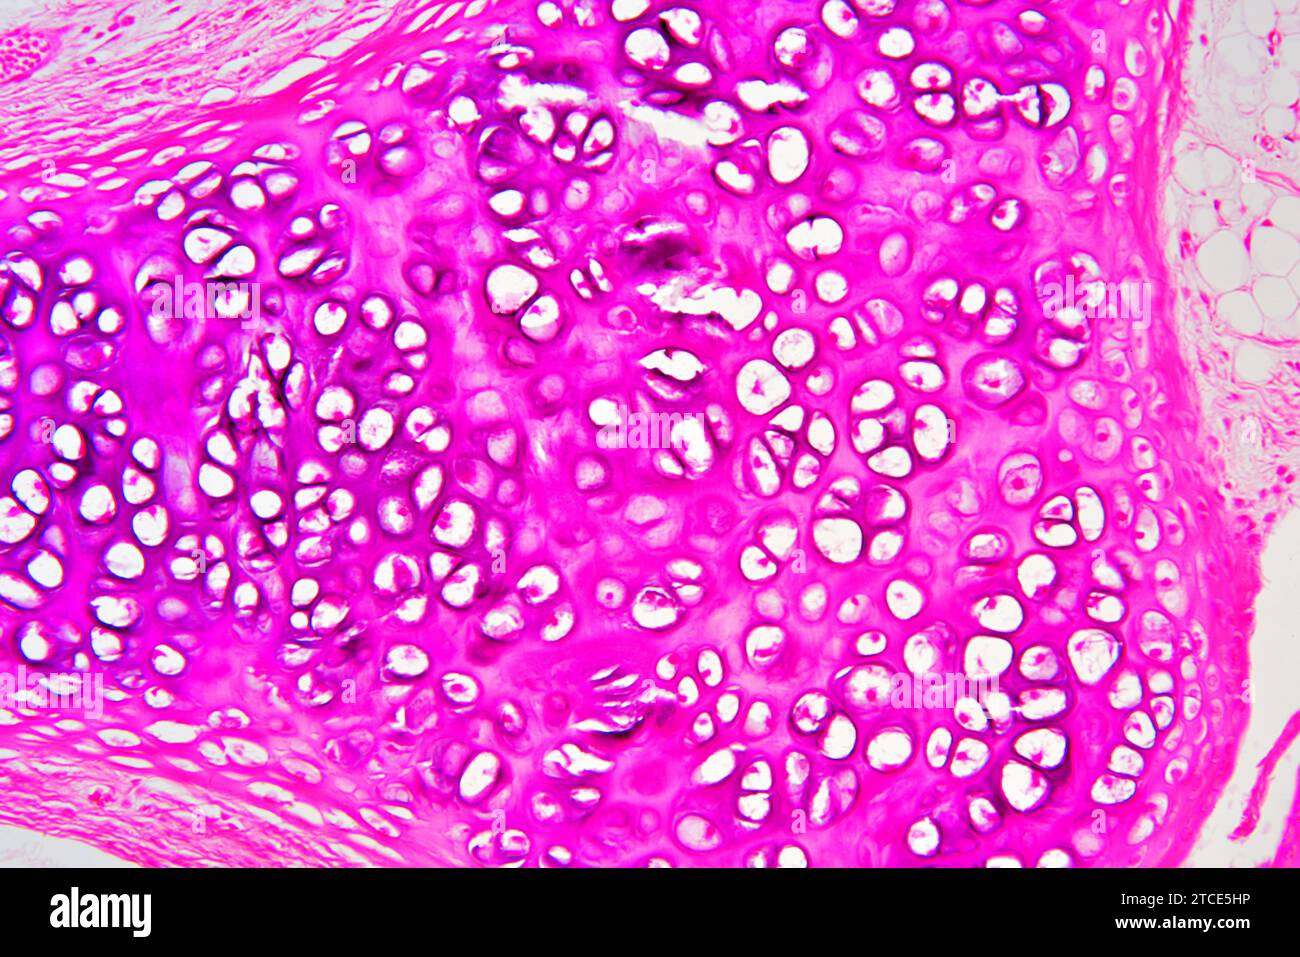 Cartilage hyaliné de la trachée montrant des chondrocytes, des fibres de collagène et une matrice. Microscope optique X200. Banque D'Images